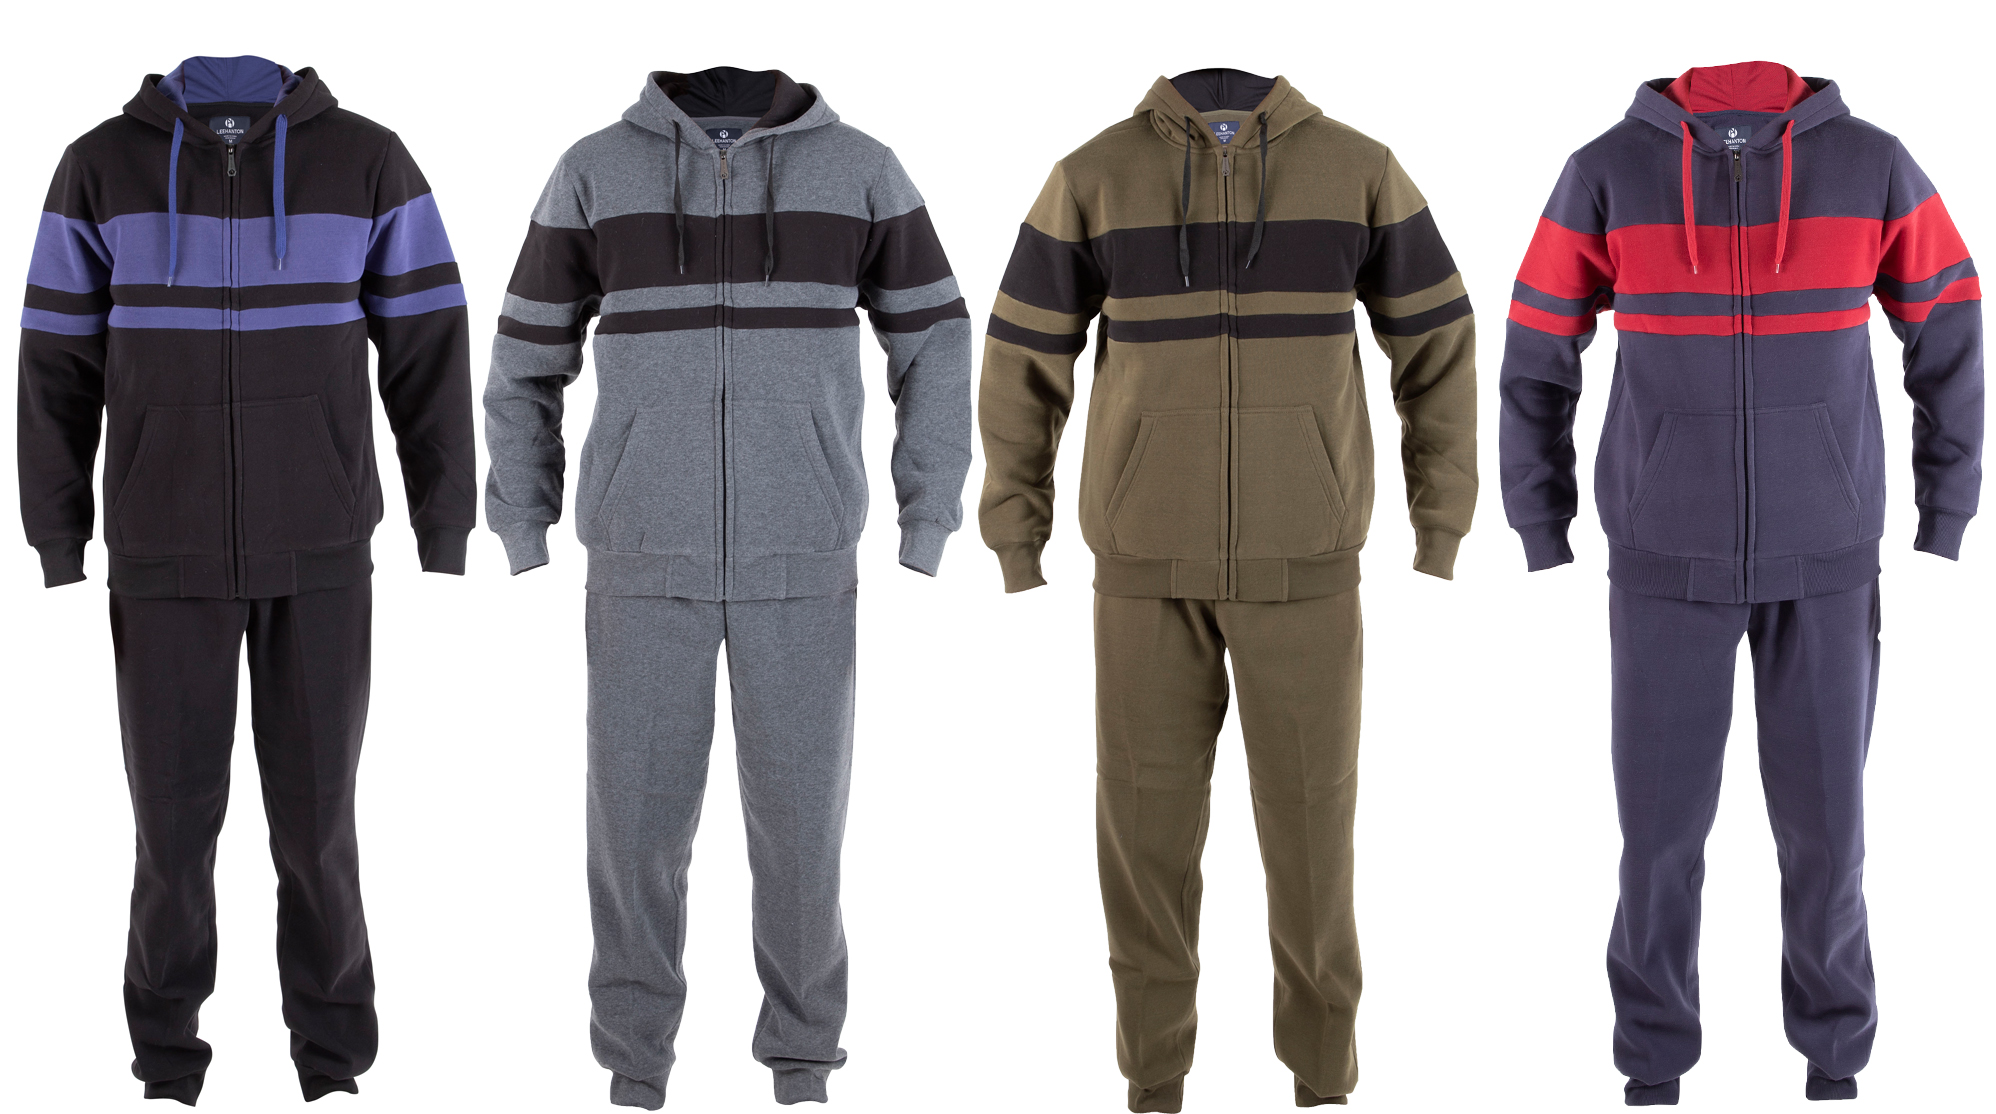 Men's 2-Piece Fleece Lined Sweatshirt & Sweatpants Sets w/ Two Tone Atheltic Stripes - Choose Your C